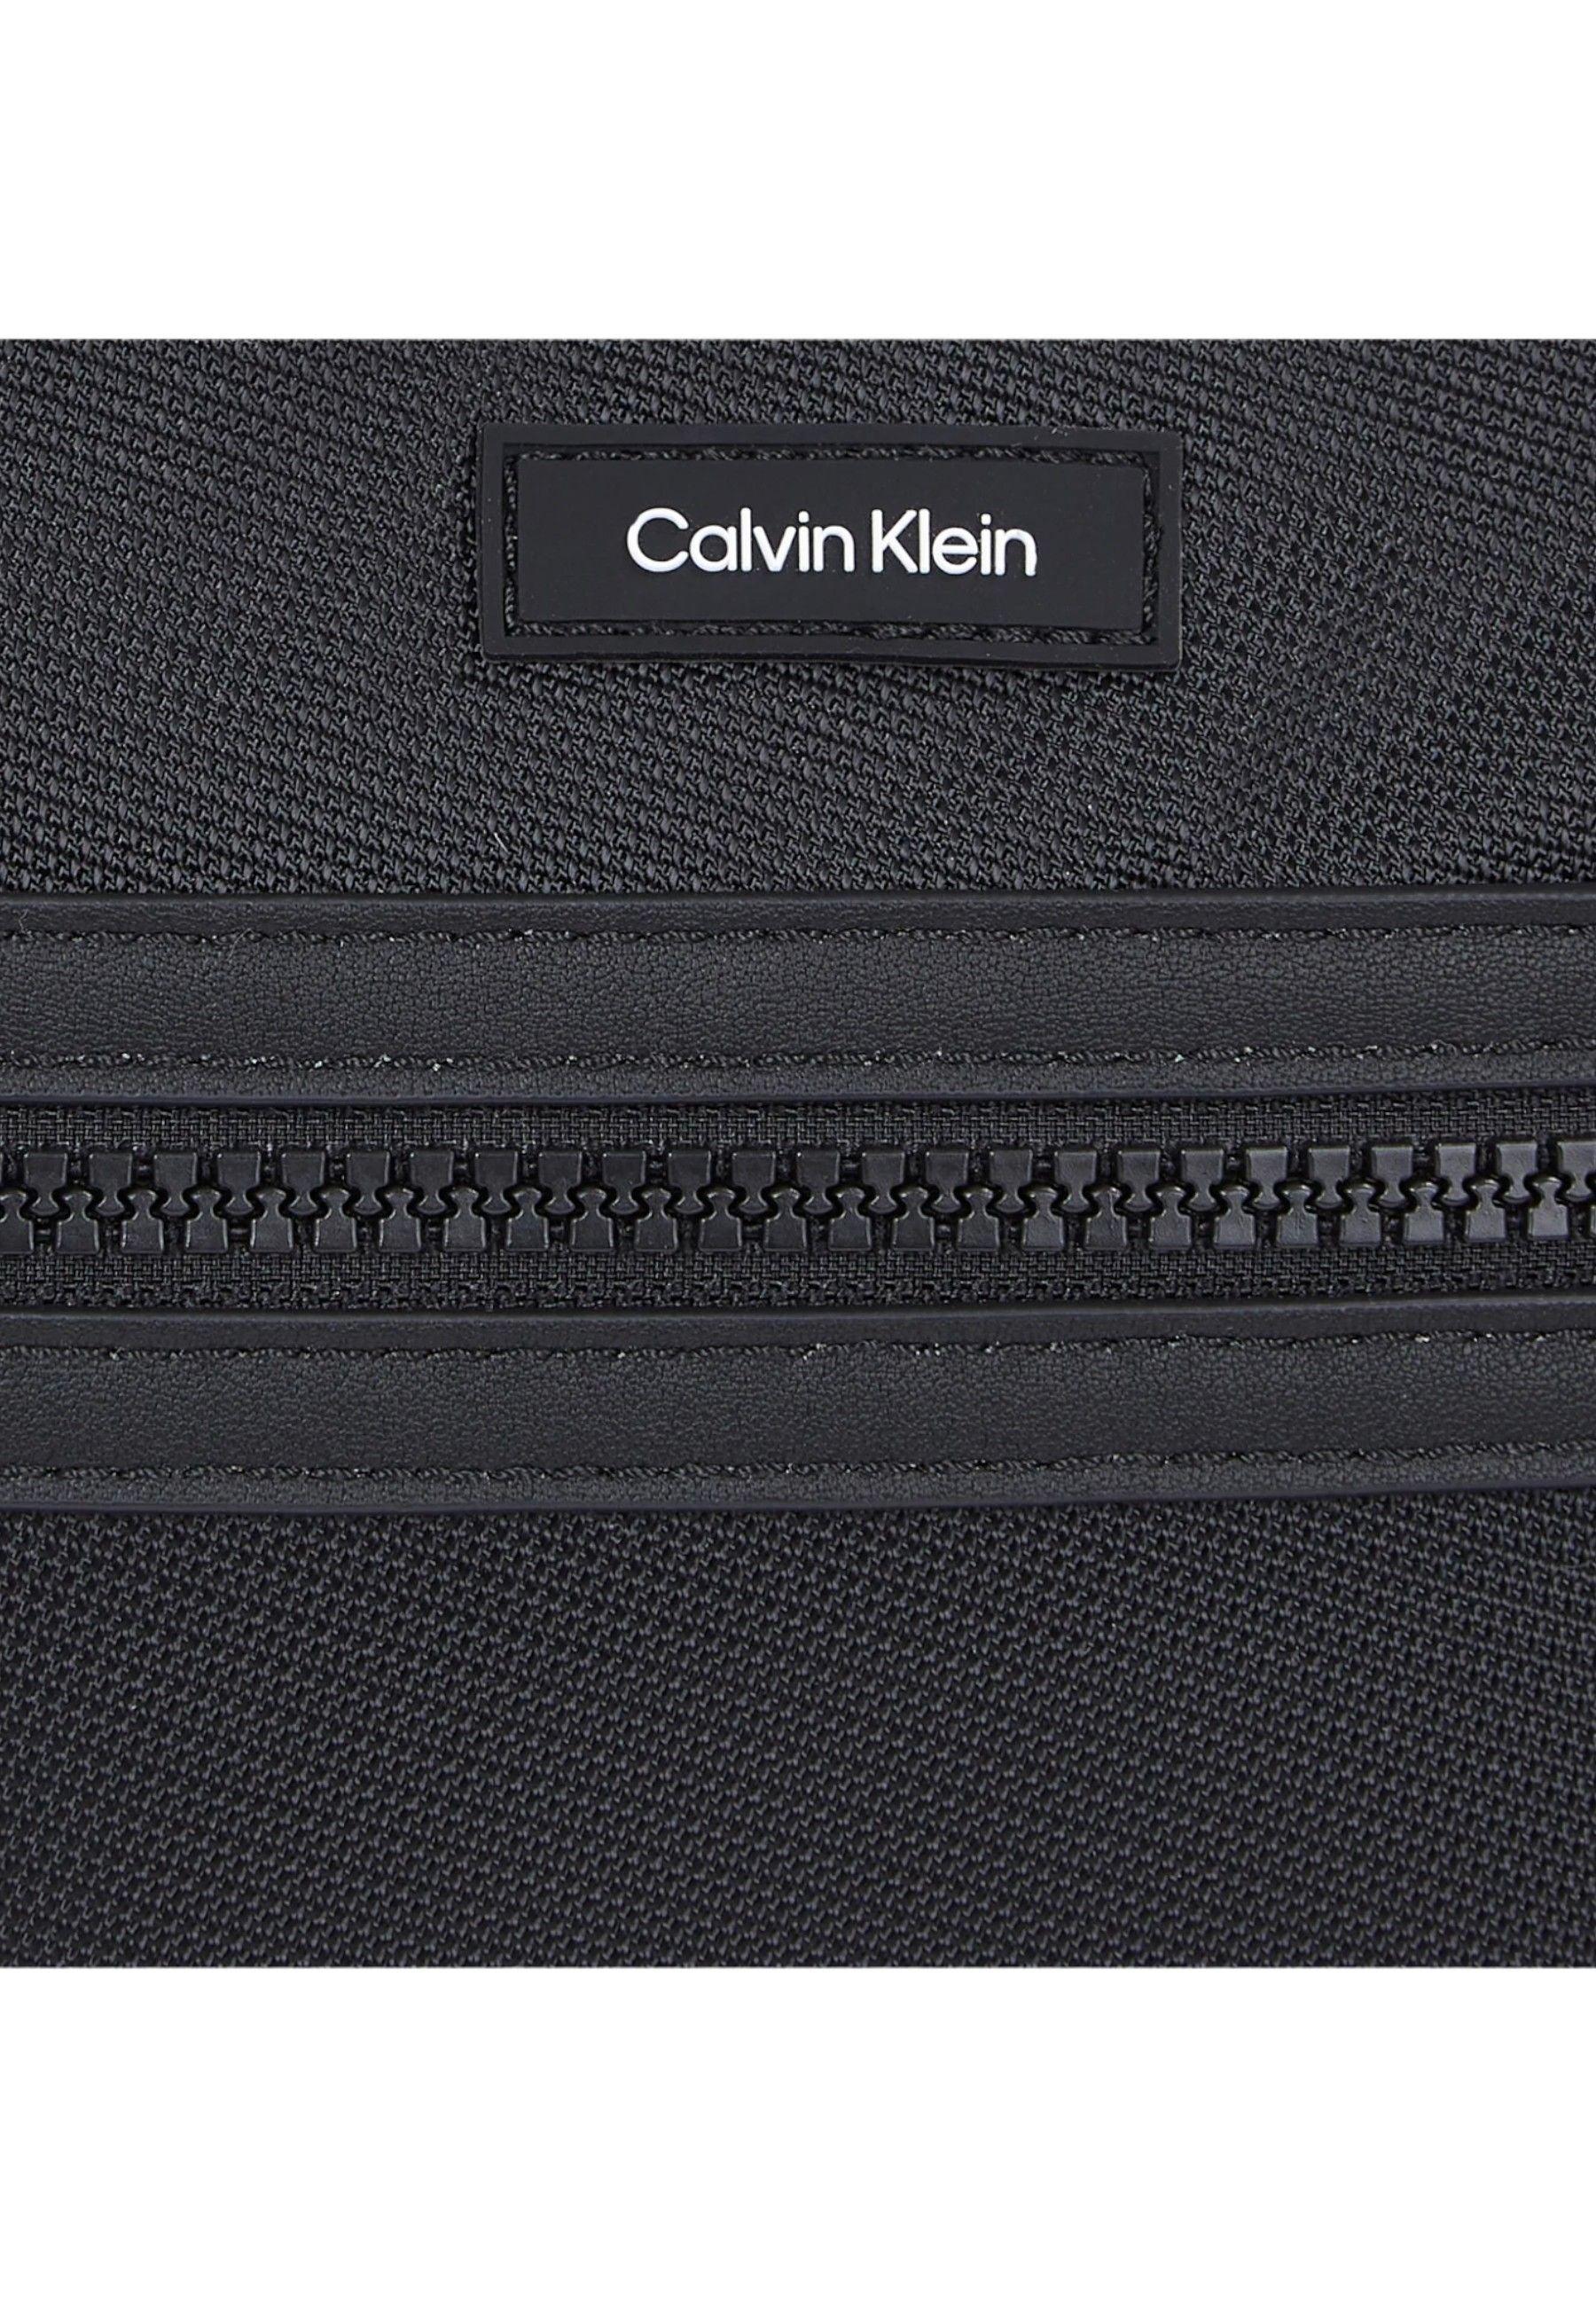 CALVIN KLEIN Essential FlatPack Borsa Tracolla Uomo Black K50K511635 - Sandrini Calzature e Abbigliamento